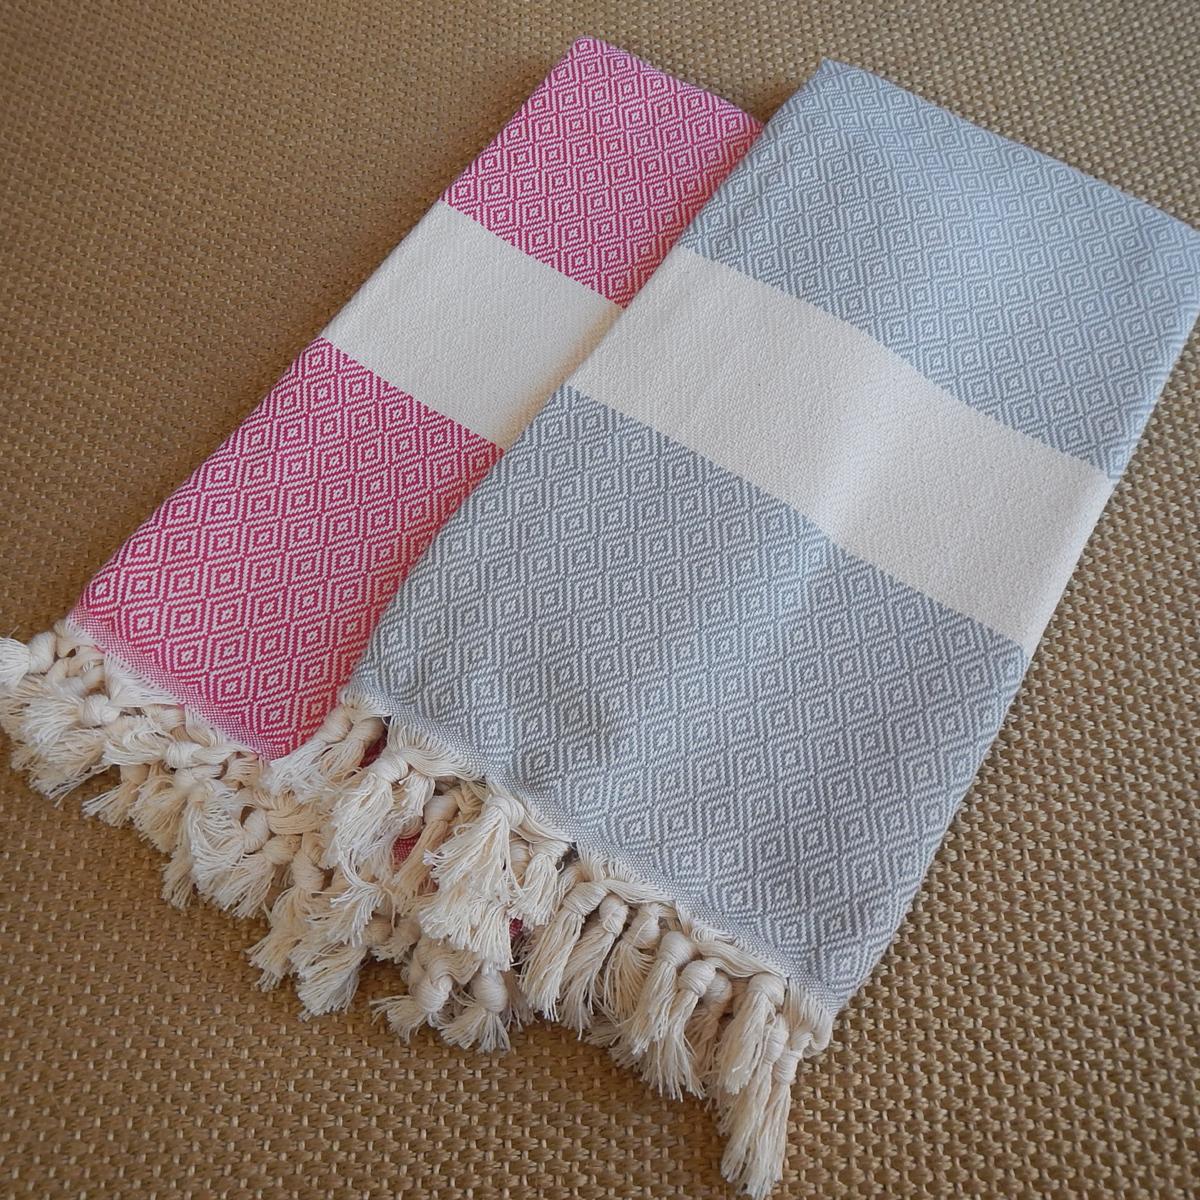  Peshtemal , Fouta, diamond design Turkish Towel in pink and grey